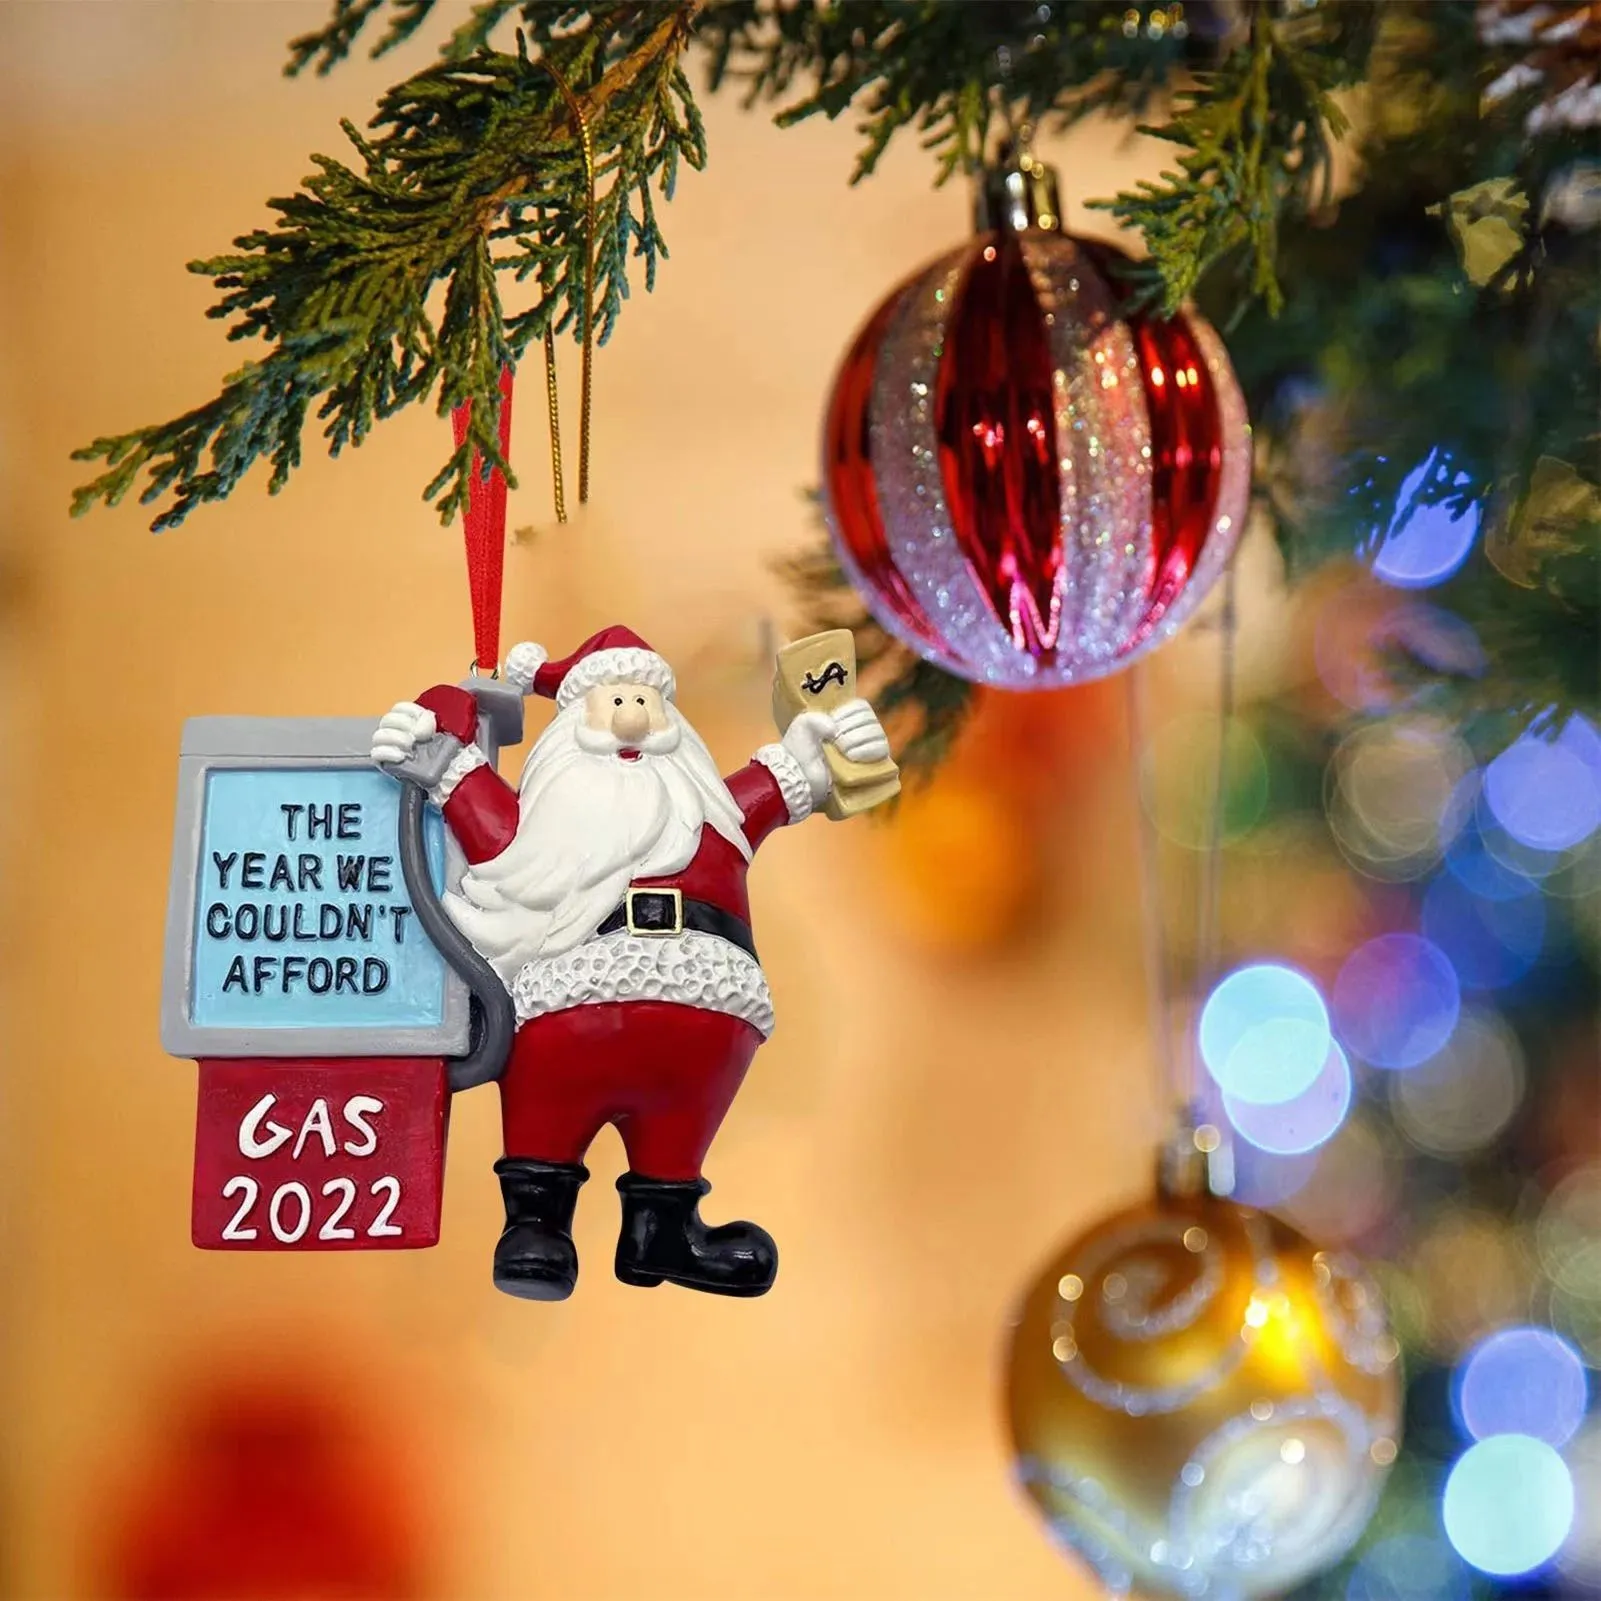 Рождественская игрушка смешные рождественские украшения Санта -Клаус в год, когда мы не могли позволить себе газовое дерево.